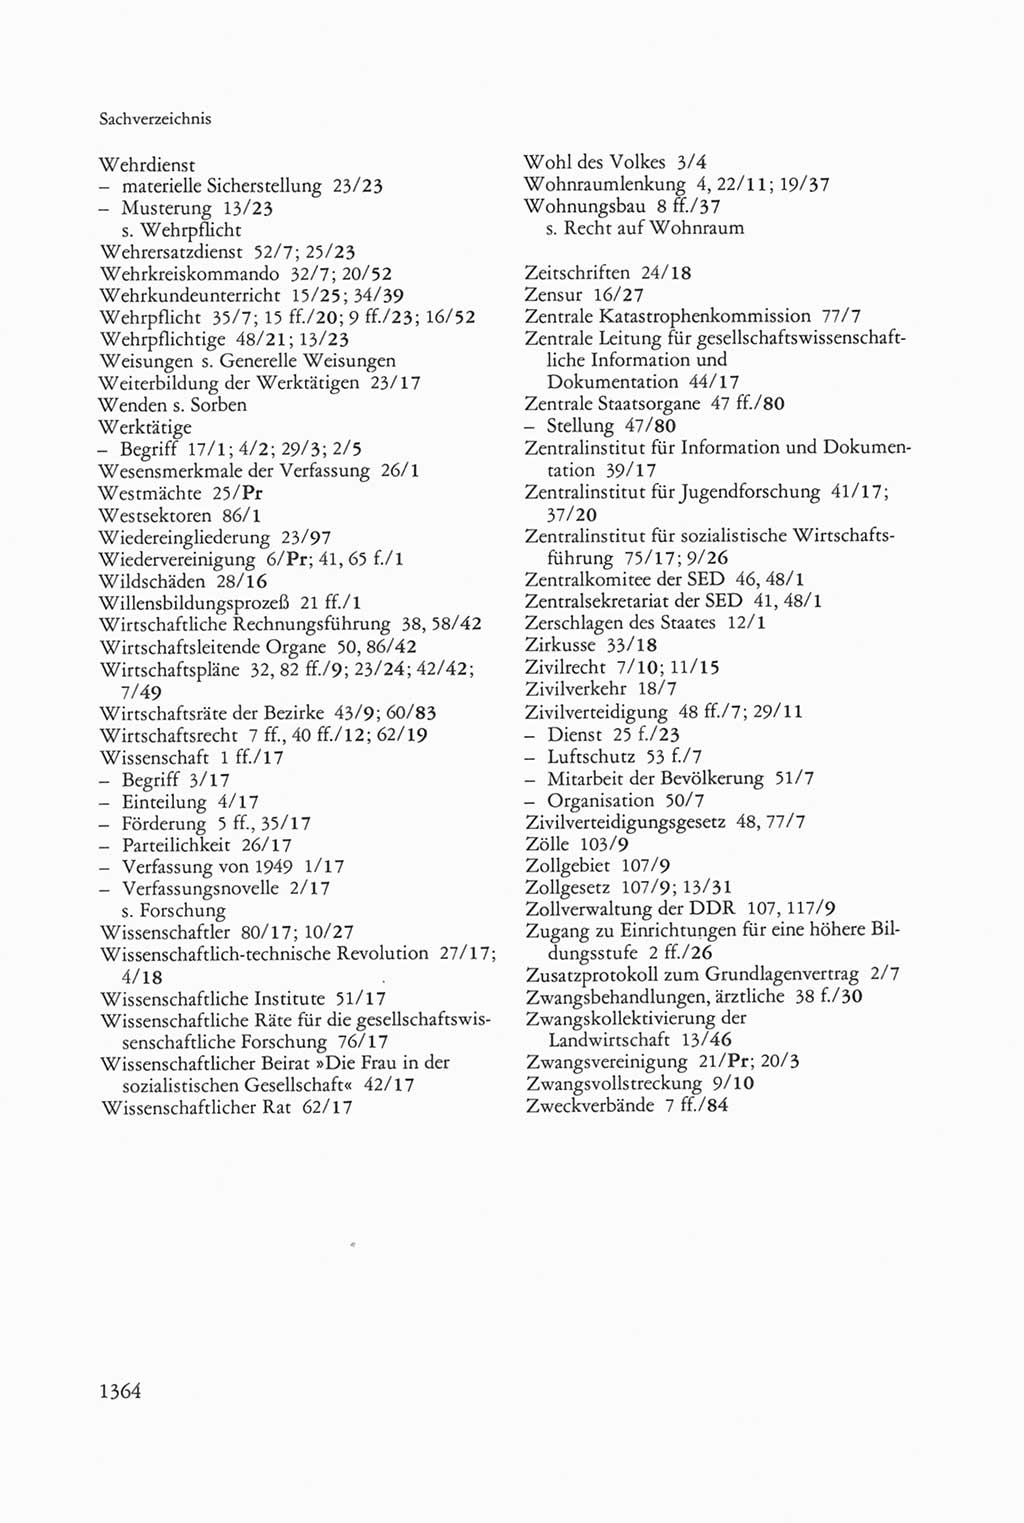 Die sozialistische Verfassung der Deutschen Demokratischen Republik (DDR), Kommentar mit einem Nachtrag 1997, Seite 1364 (Soz. Verf. DDR Komm. Nachtr. 1997, S. 1364)